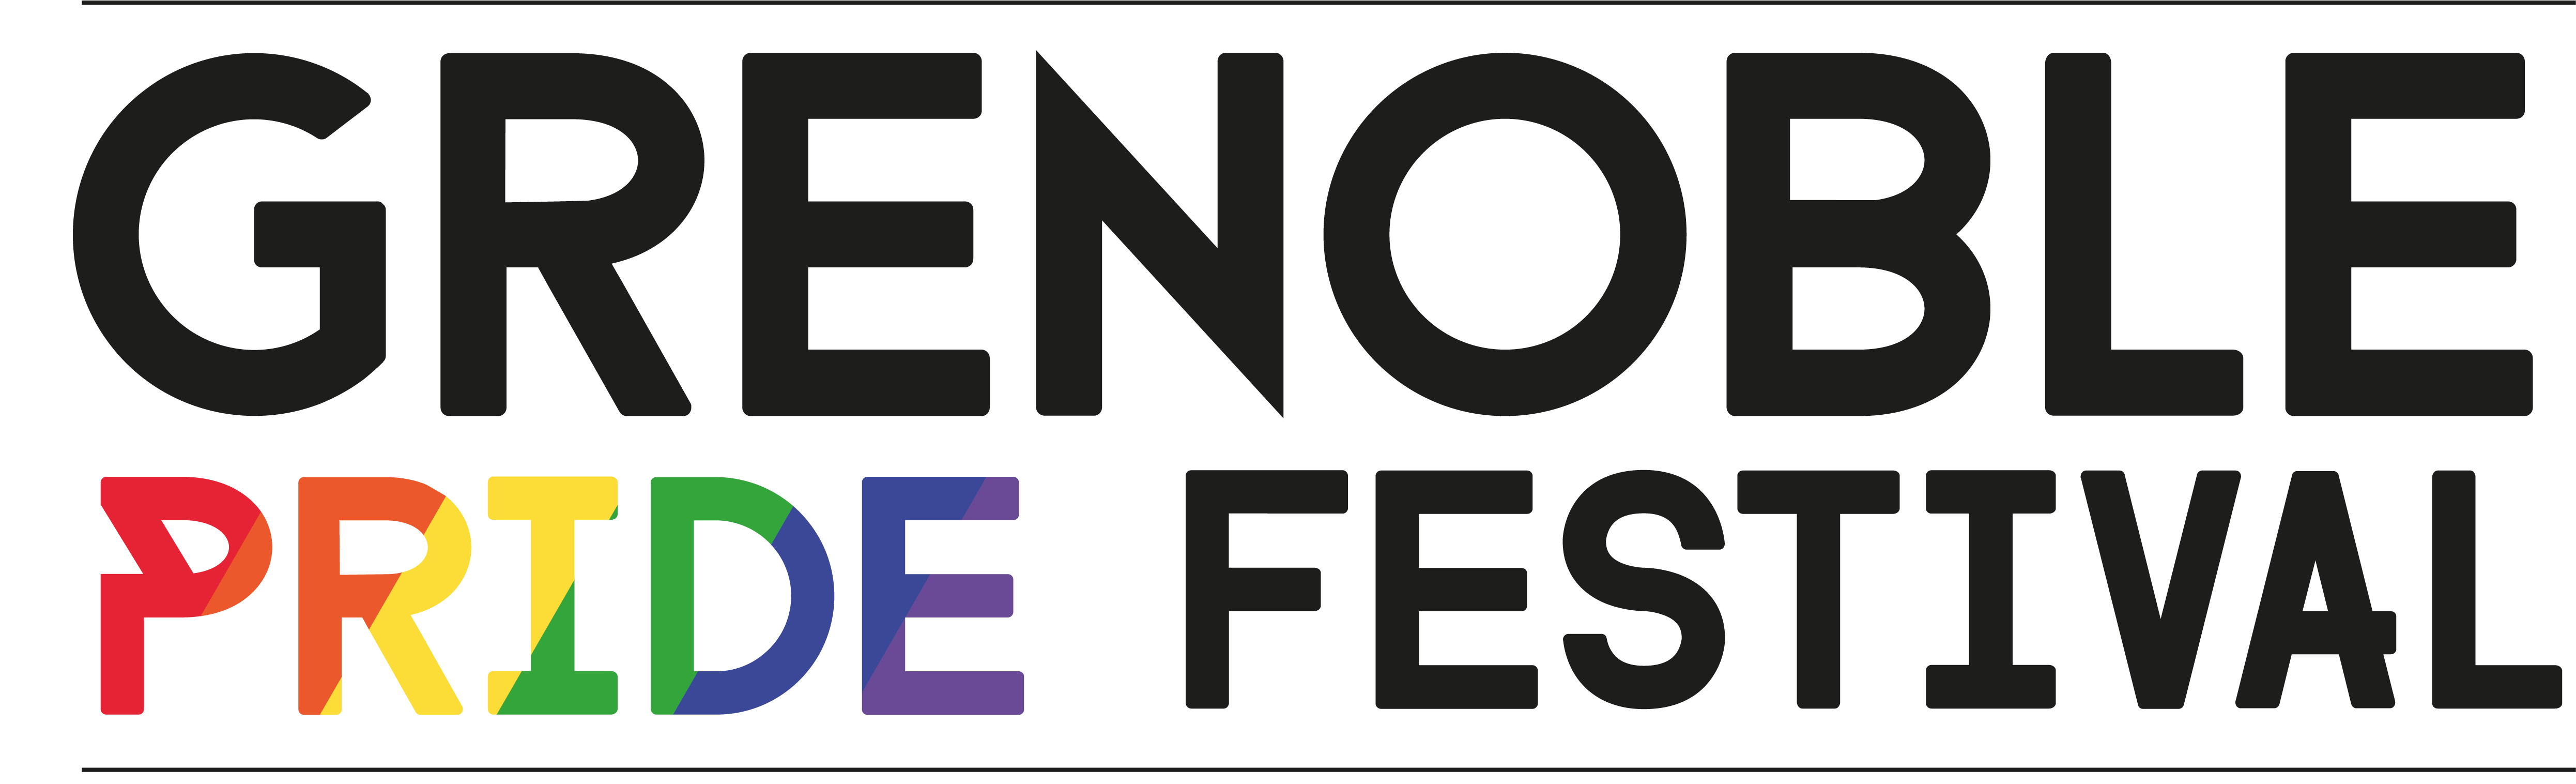 Grenoble Pride Festival 2019